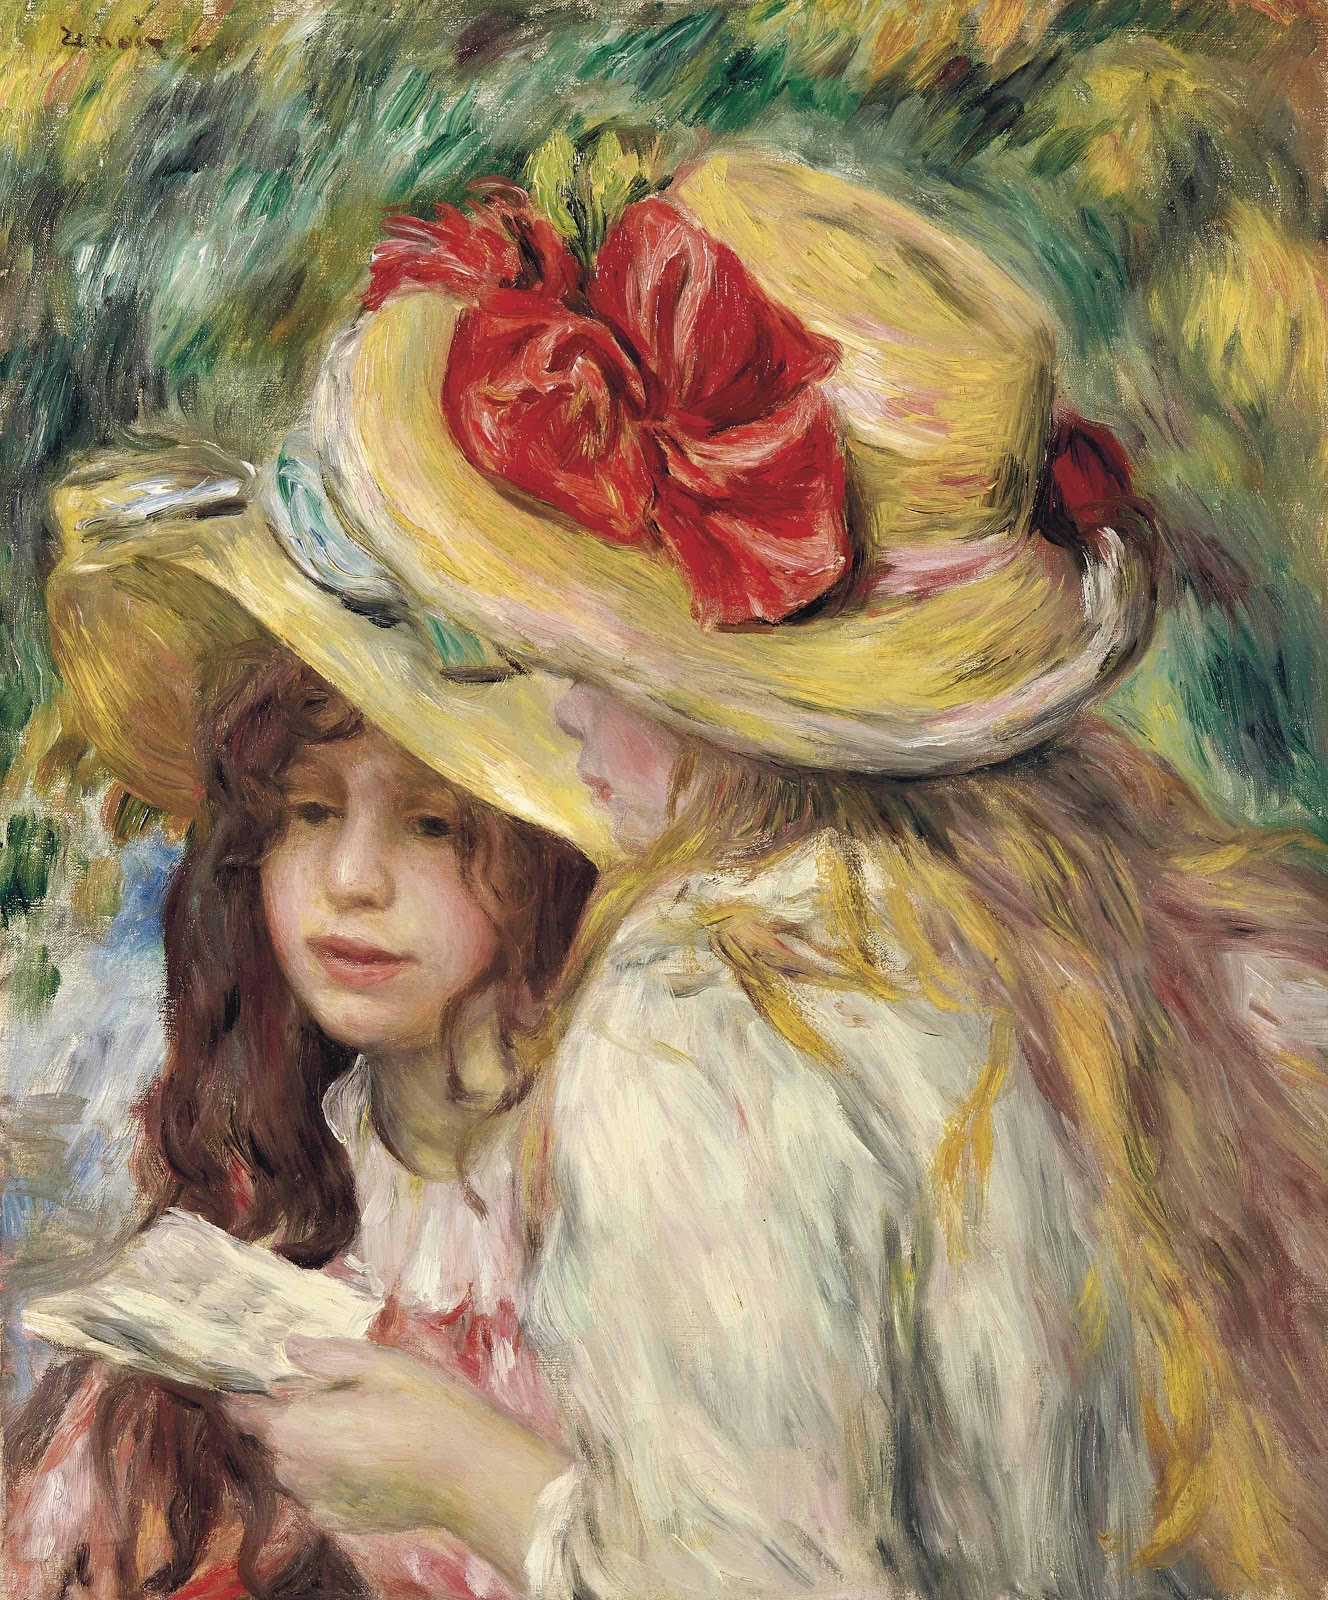 Pierre+Auguste+Renoir-1841-1-19 (886).jpg